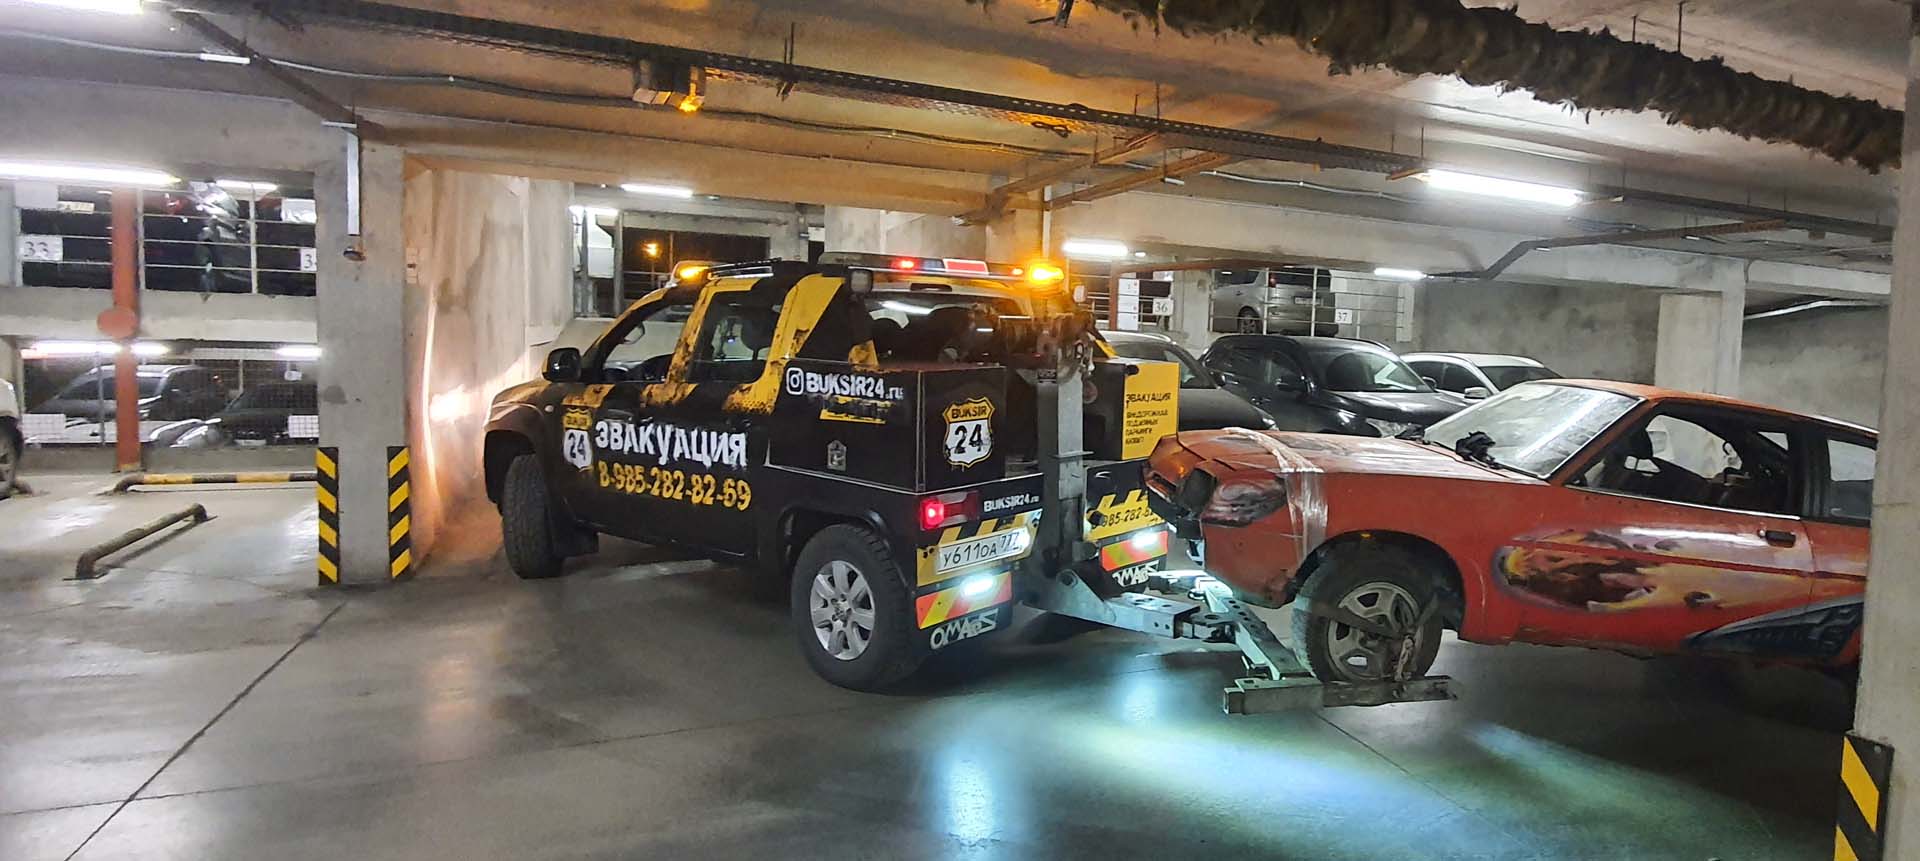 Помощь авто в подземном паркинге услугами эвакуатора